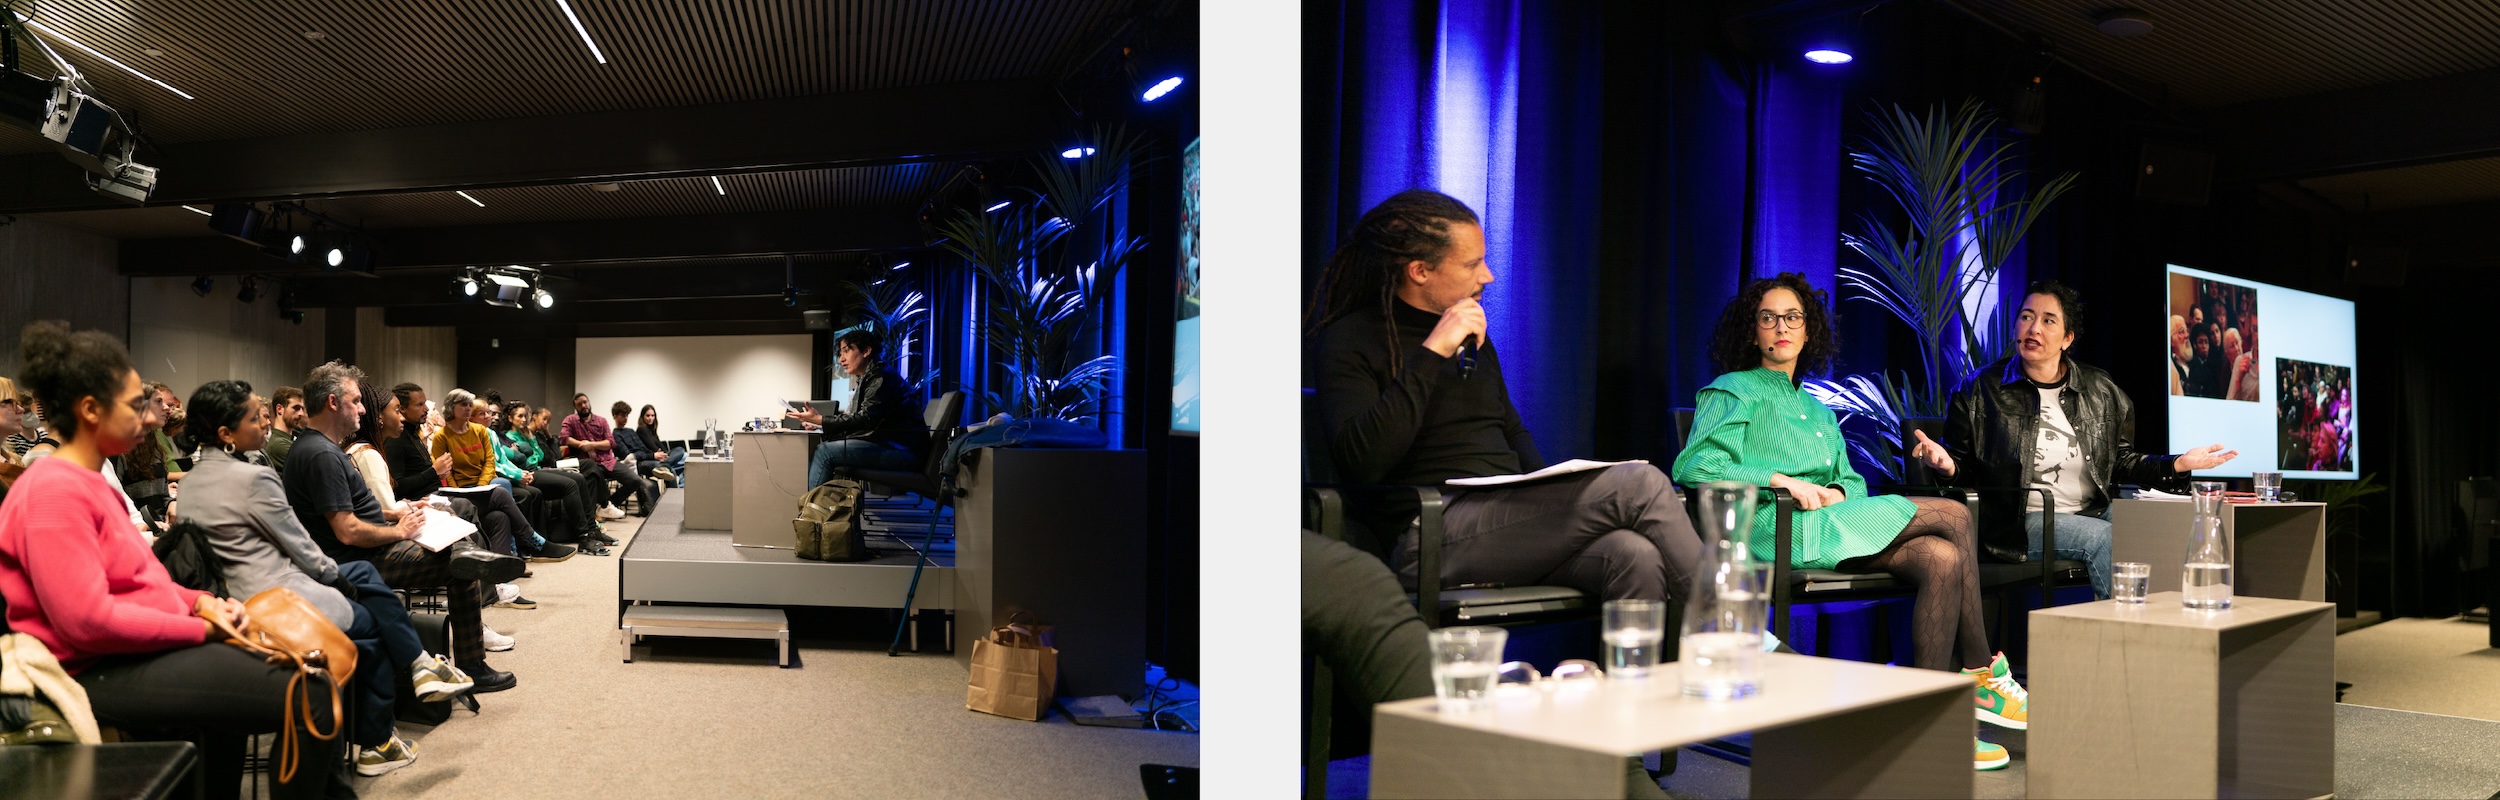 Overzichtsbeeld van de zaal waarin het panelgesprek plaatsvond in De Krook in Gent, met Miriyam Aouragh op het podium.